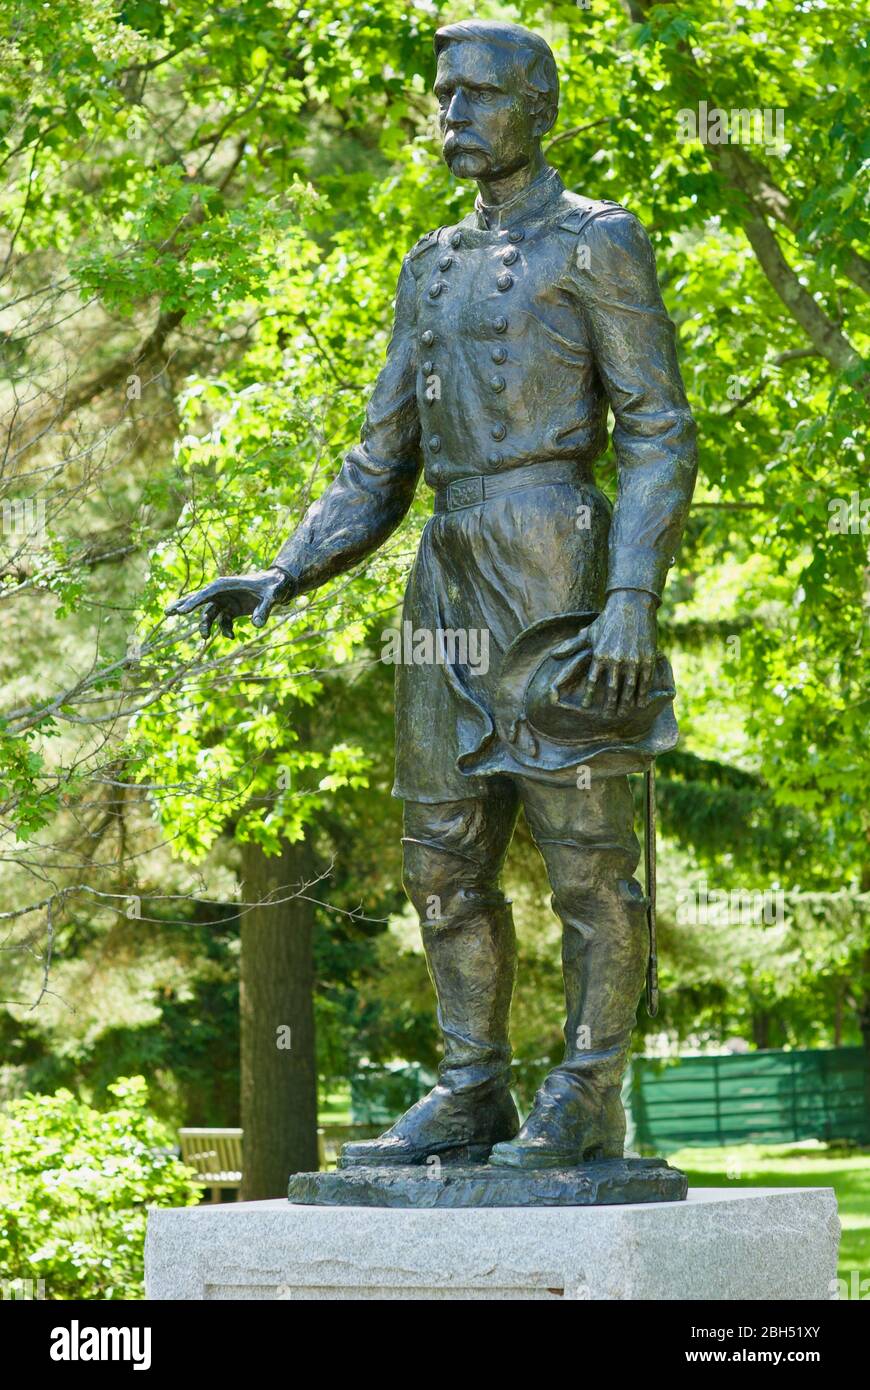 Brunswick, Maine, USA - 1 luglio 2019: Statua di Joshua L. Chamberlain, eroe della battaglia di Gettysburg (Guerra civile americana) nel campus del Bowdoin College. Foto Stock